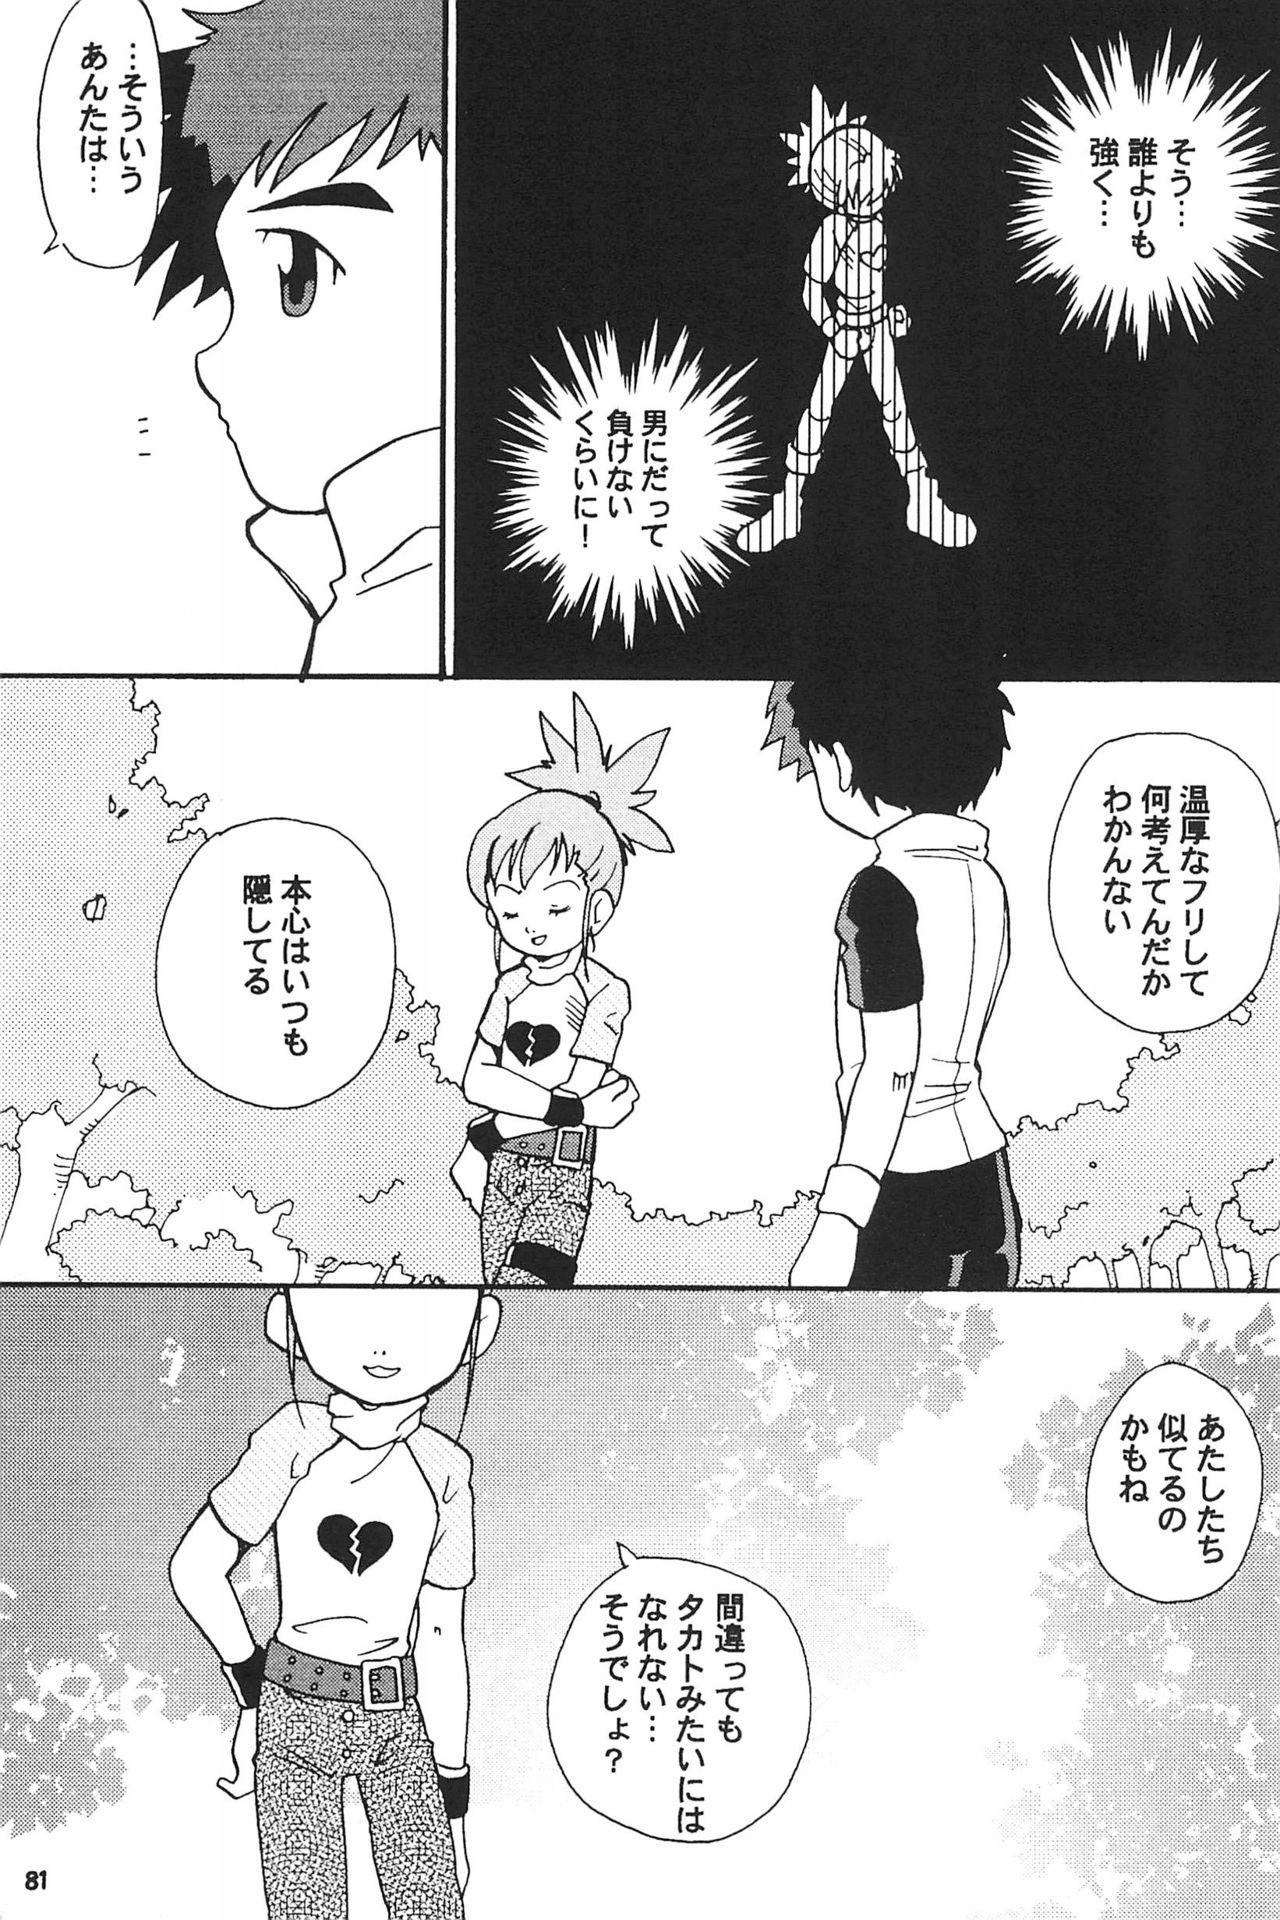 (SC15) [LeeRuki Anthology Jikkou Iinkai (Various)] LeeRuki Anthology J&R REPORT (Digimon Tamers) 82